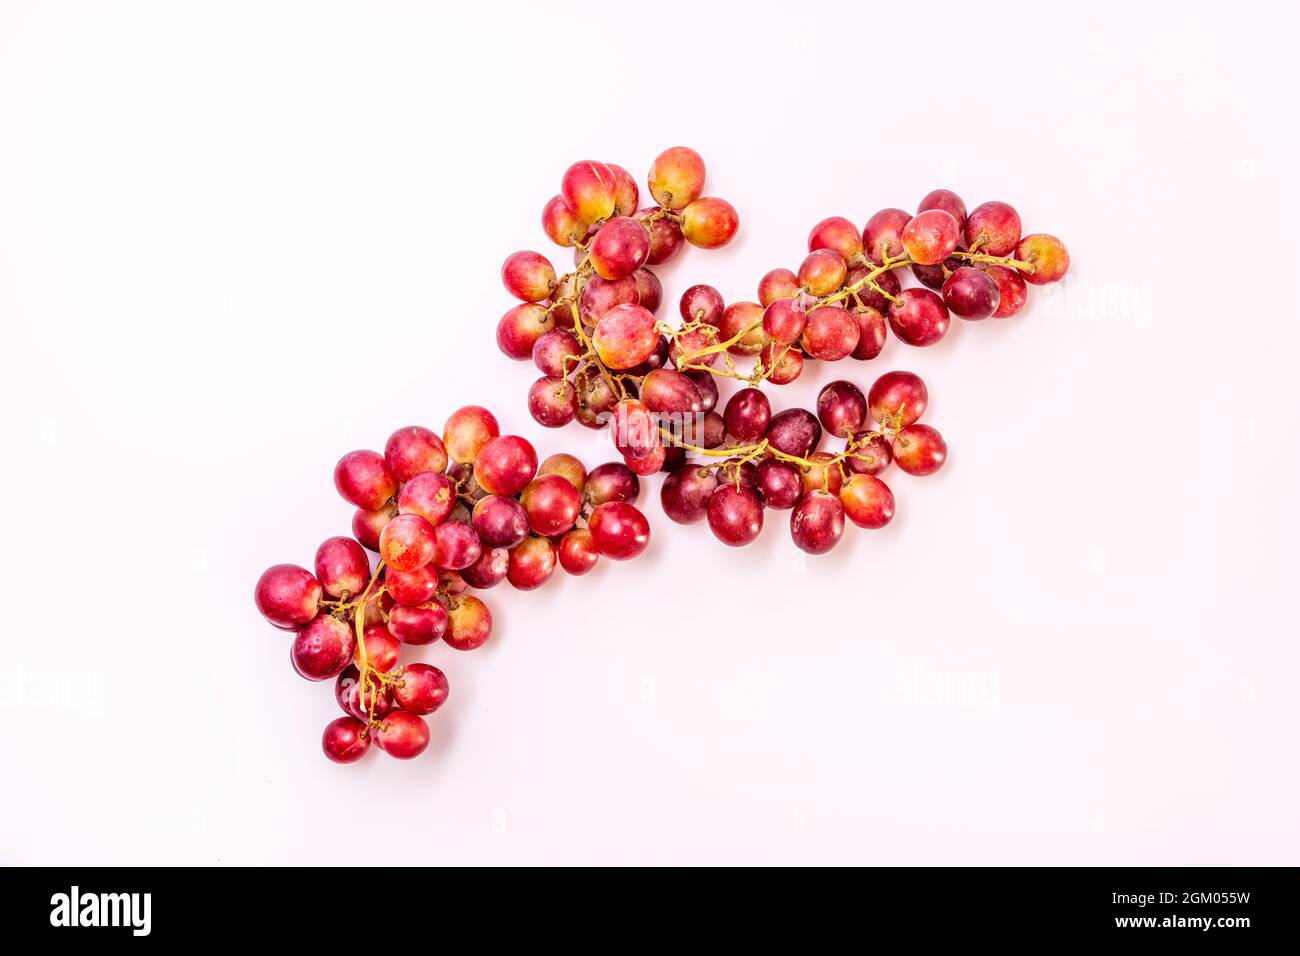 diversi grappoli di uve da tavola rosse deliziosamente mature pronte per essere assaporate come uno spuntino di frutta Foto Stock